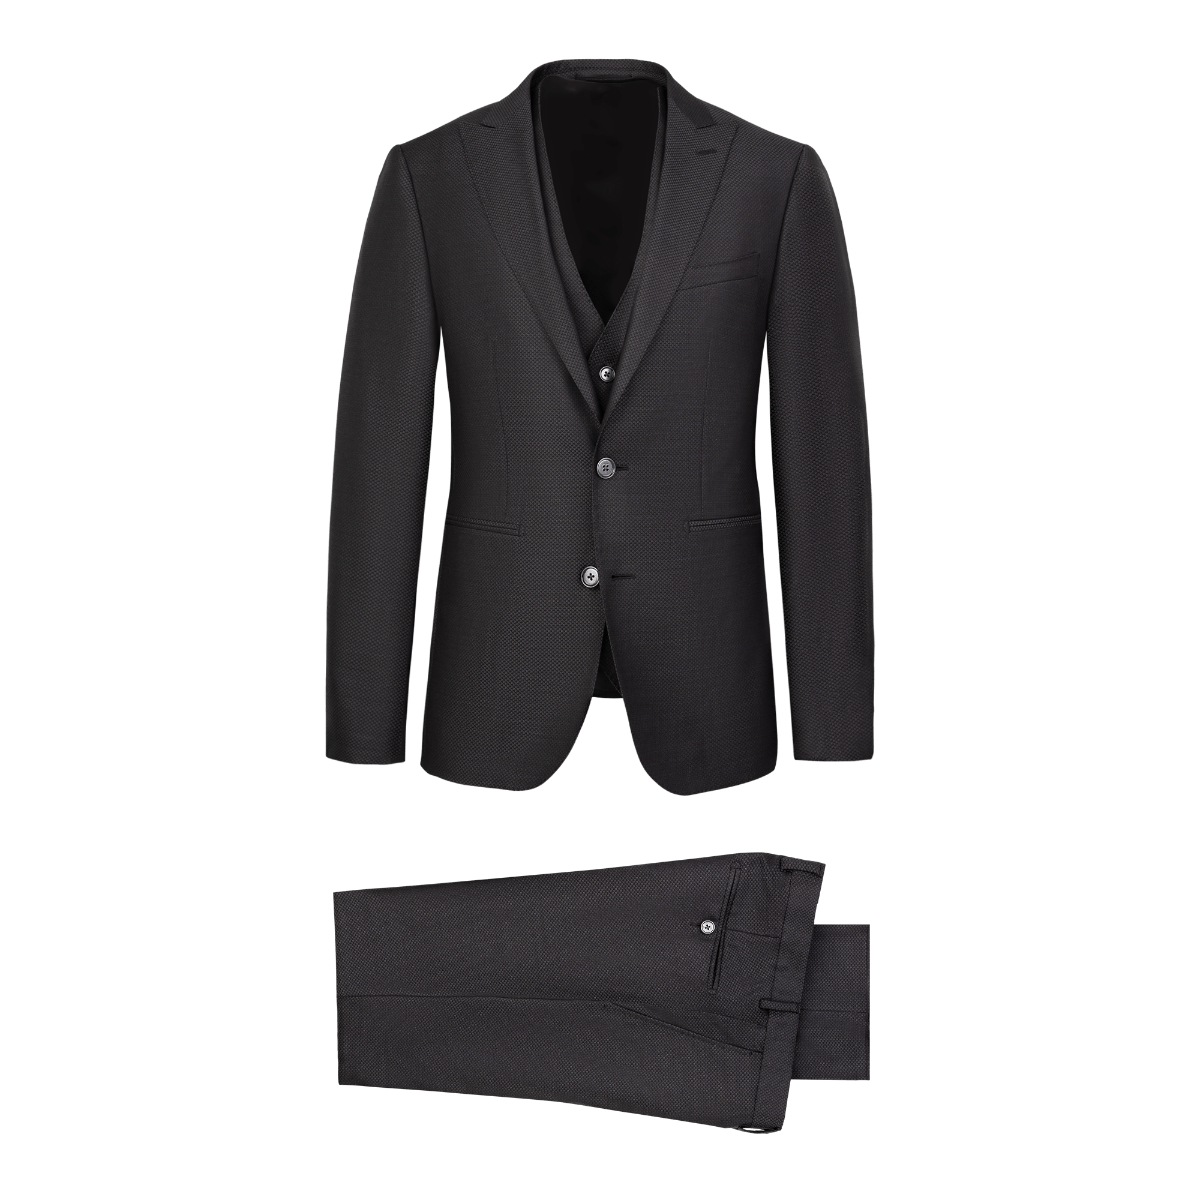 Men's Jacquard Gray 3 Piece Suit